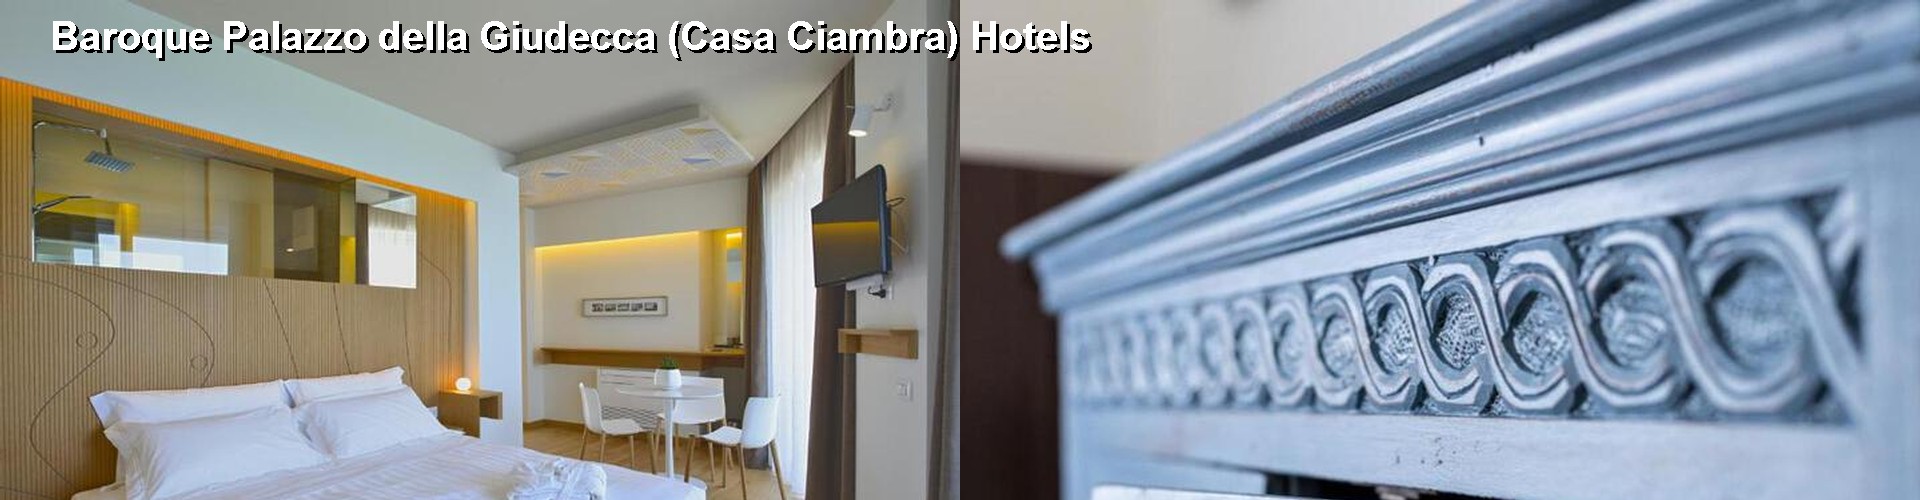 5 Best Hotels near Baroque Palazzo della Giudecca (Casa Ciambra)